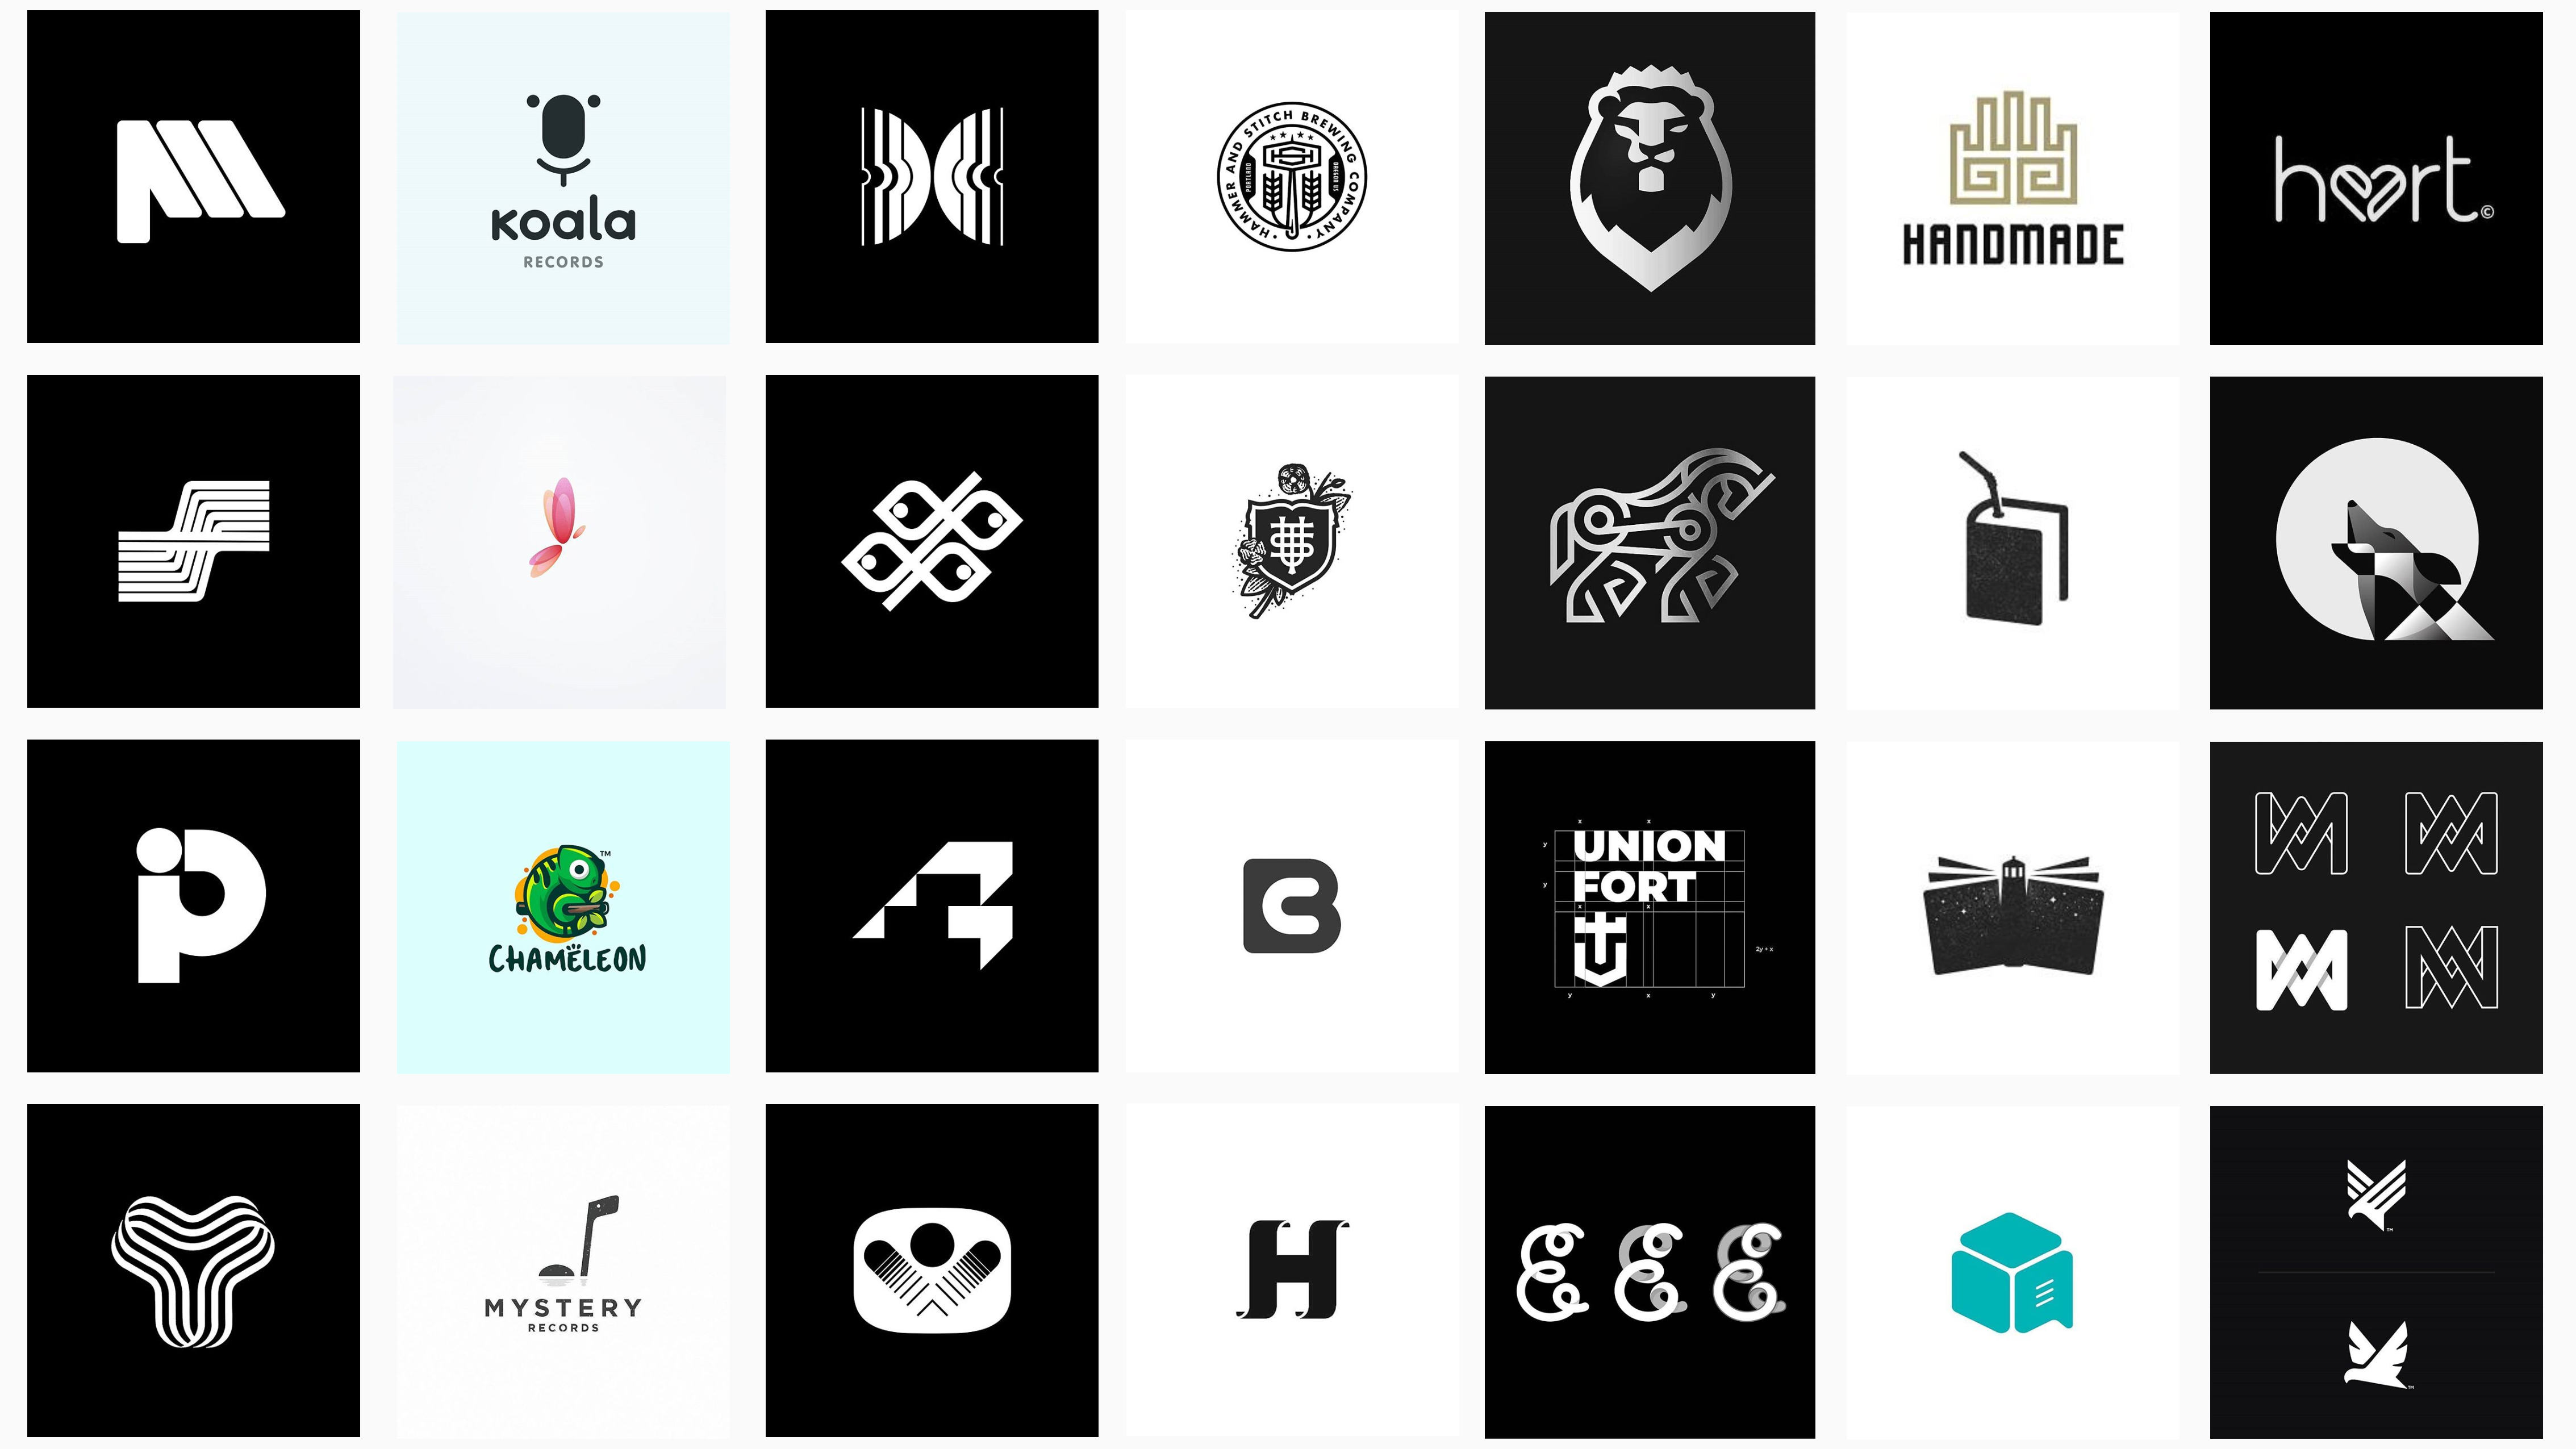 8 Insta feeds to follow for logo design inspiration